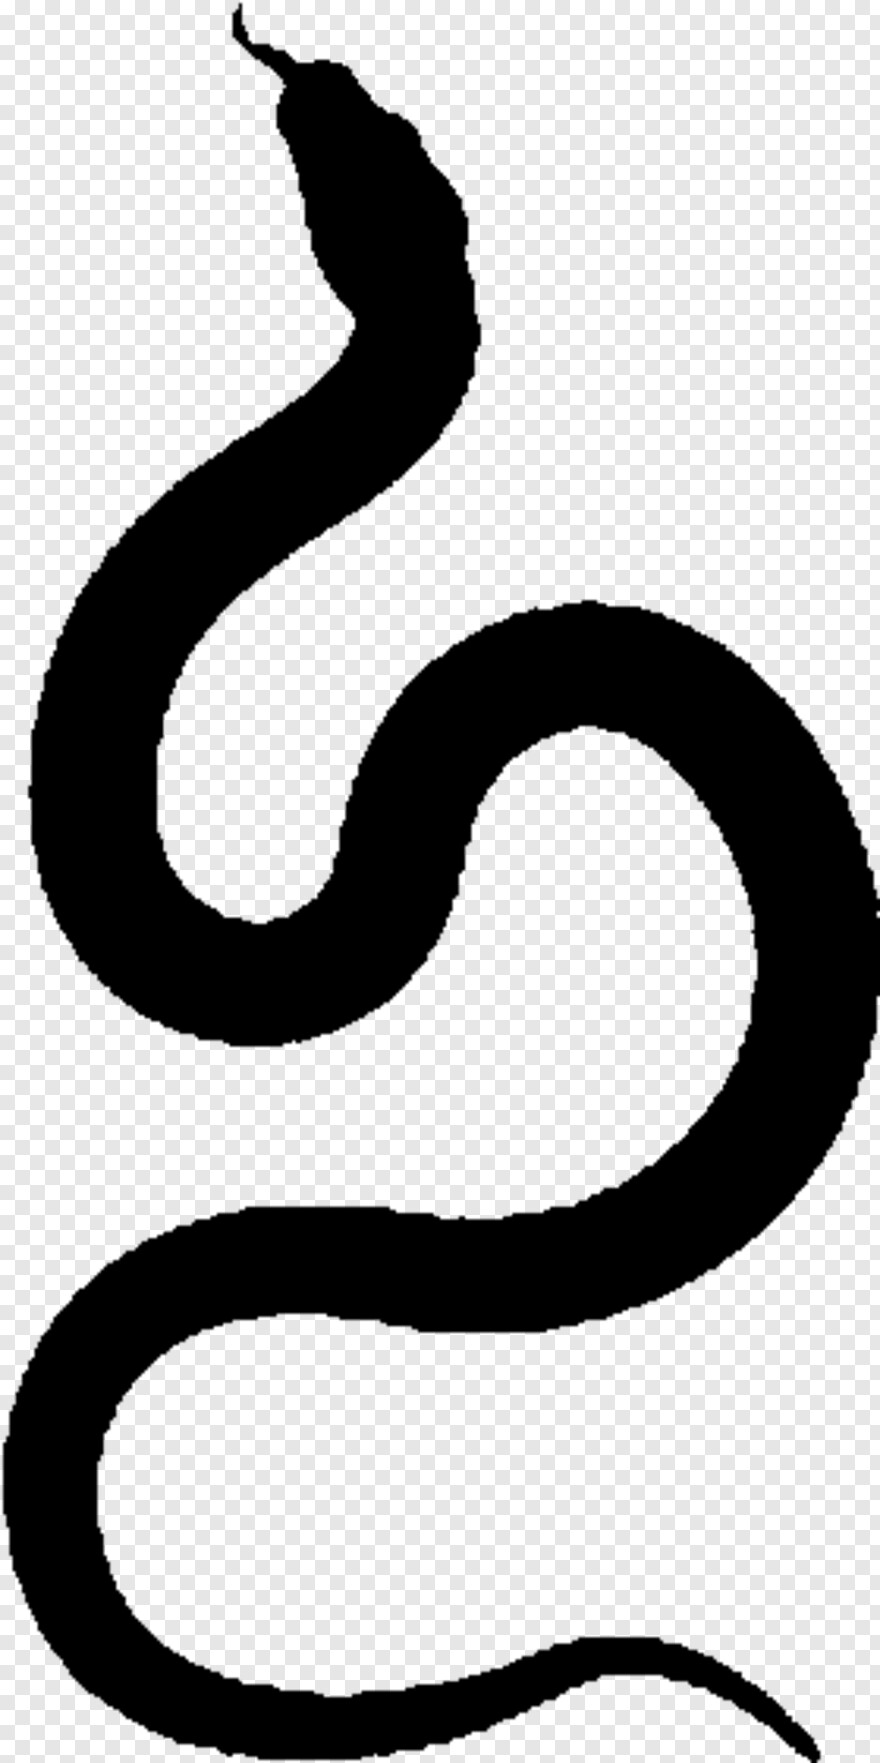 Badeværelse Forøge Erklæring Fire Emblem Logo, Emblem, Snake Tongue, Solid Snake, Black Snake, Gucci  Snake #867765 - Free Icon Library